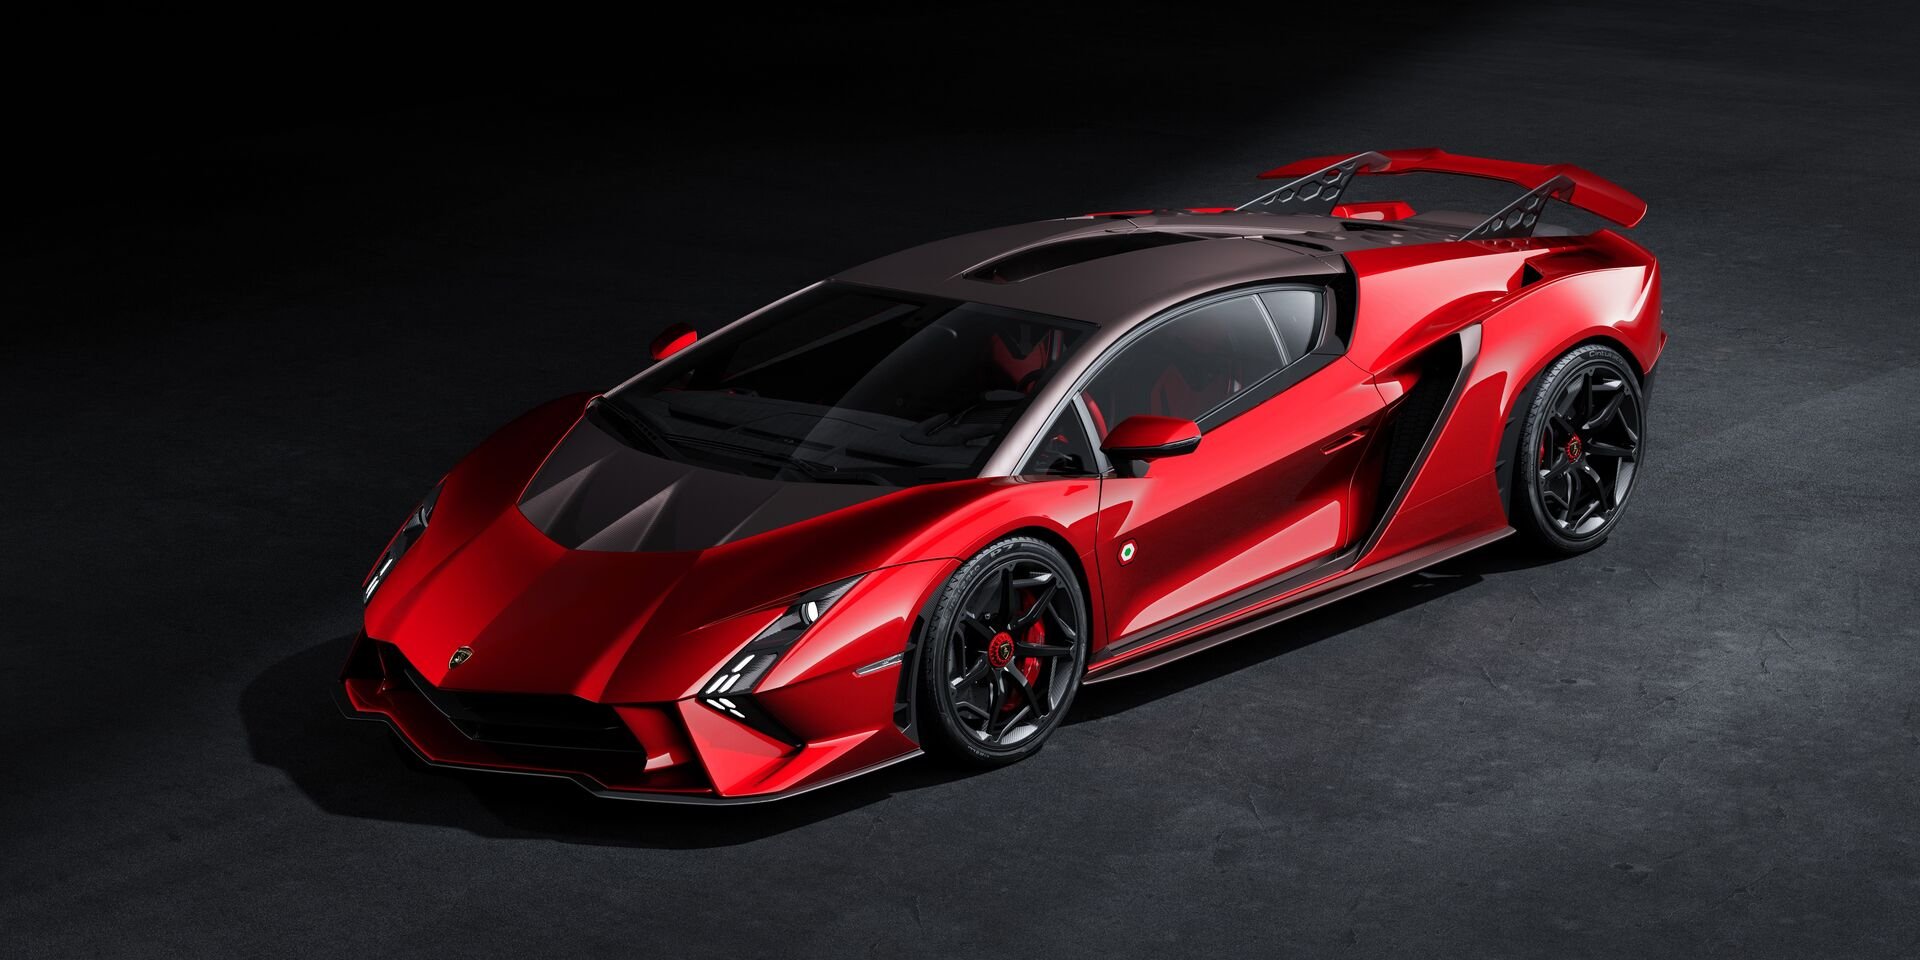 Lamborghini-Autoabdeckung✓, maßgeschneidert für Ihr Fahrzeug, Lamborgh